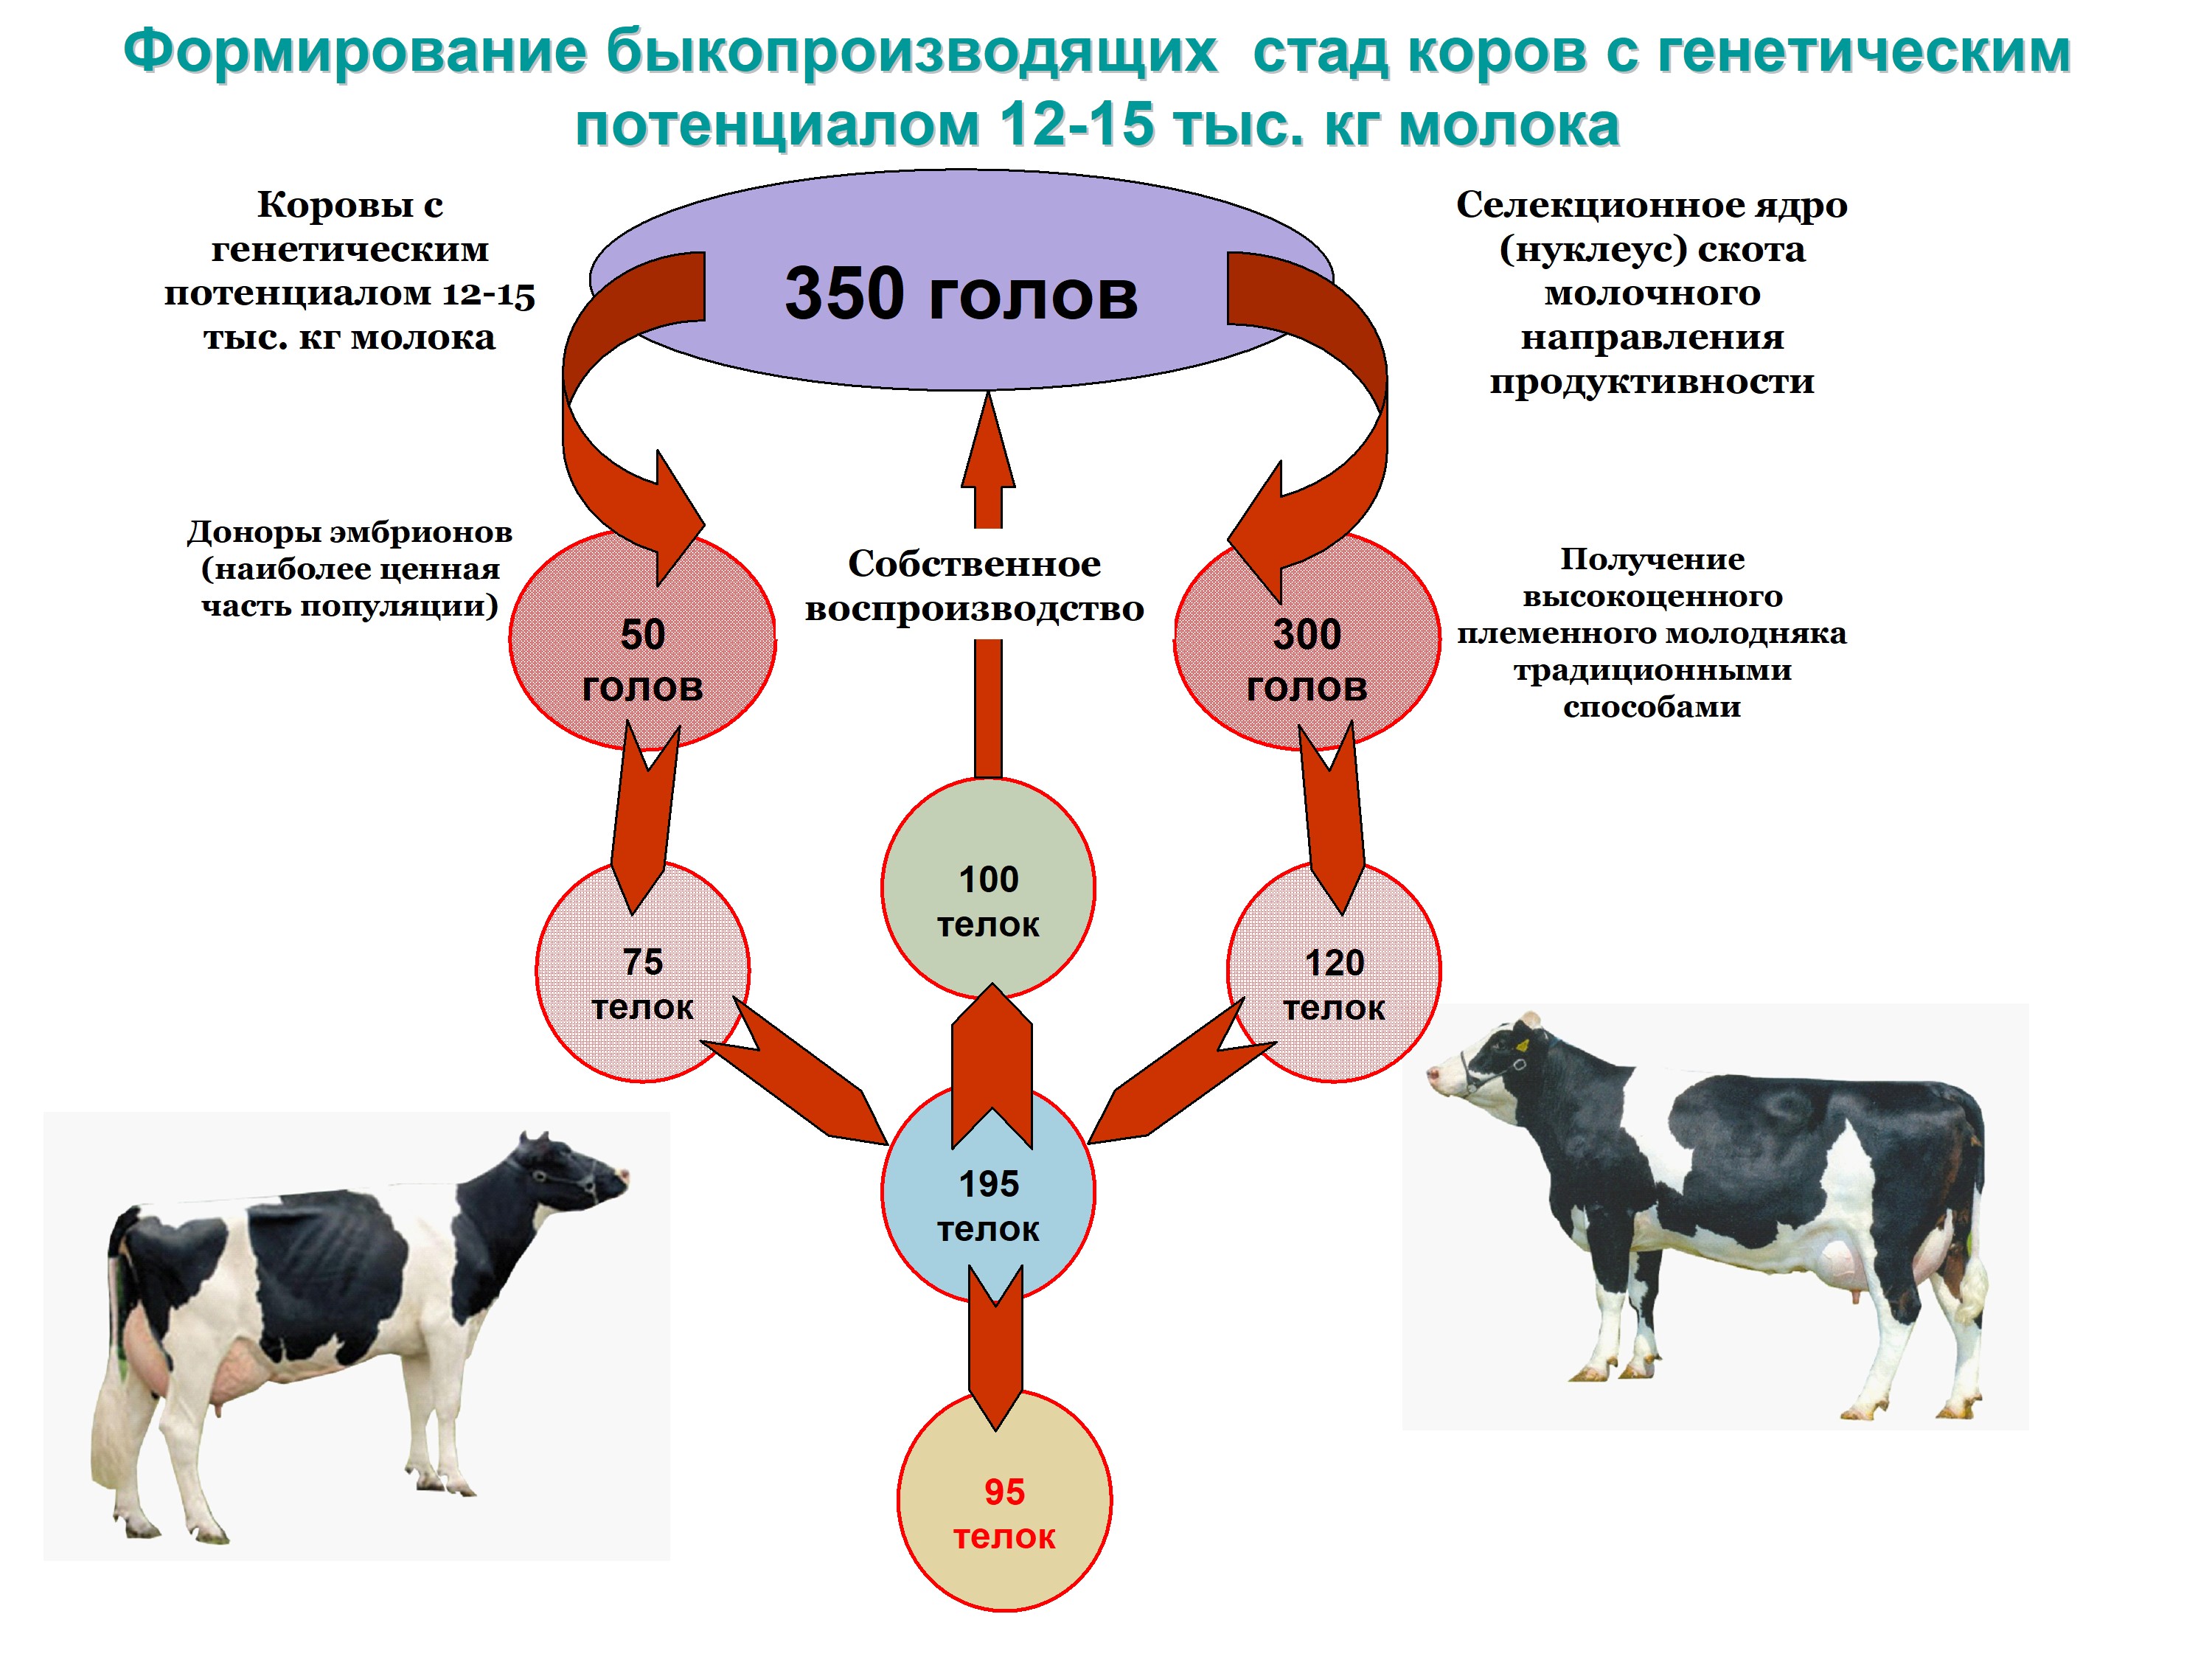 О молочных породах коров: характеристики и факторы, влияющие на продуктивность